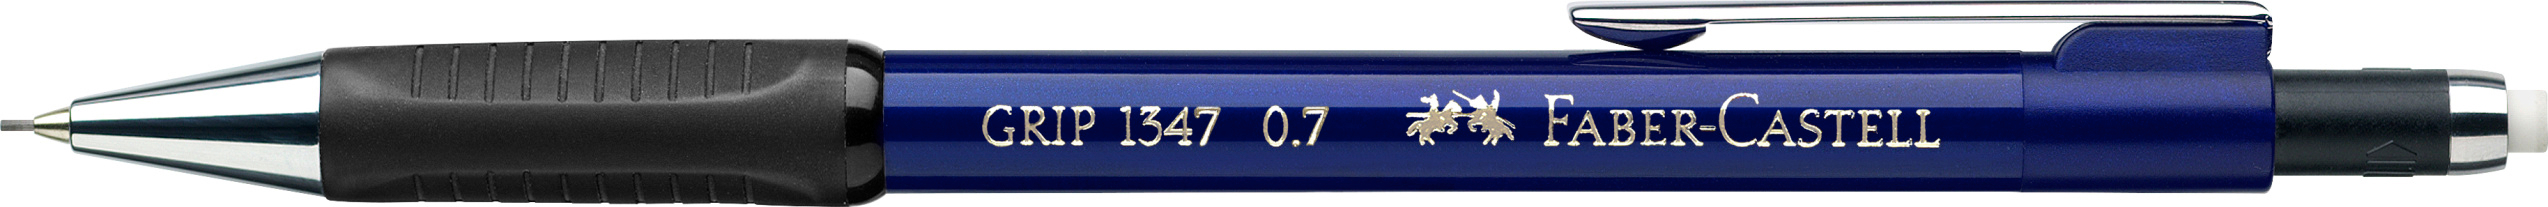 FABER-CASTELL Porte-mine GRIP 1347 134751 bleu, avec gomme 0.7mm